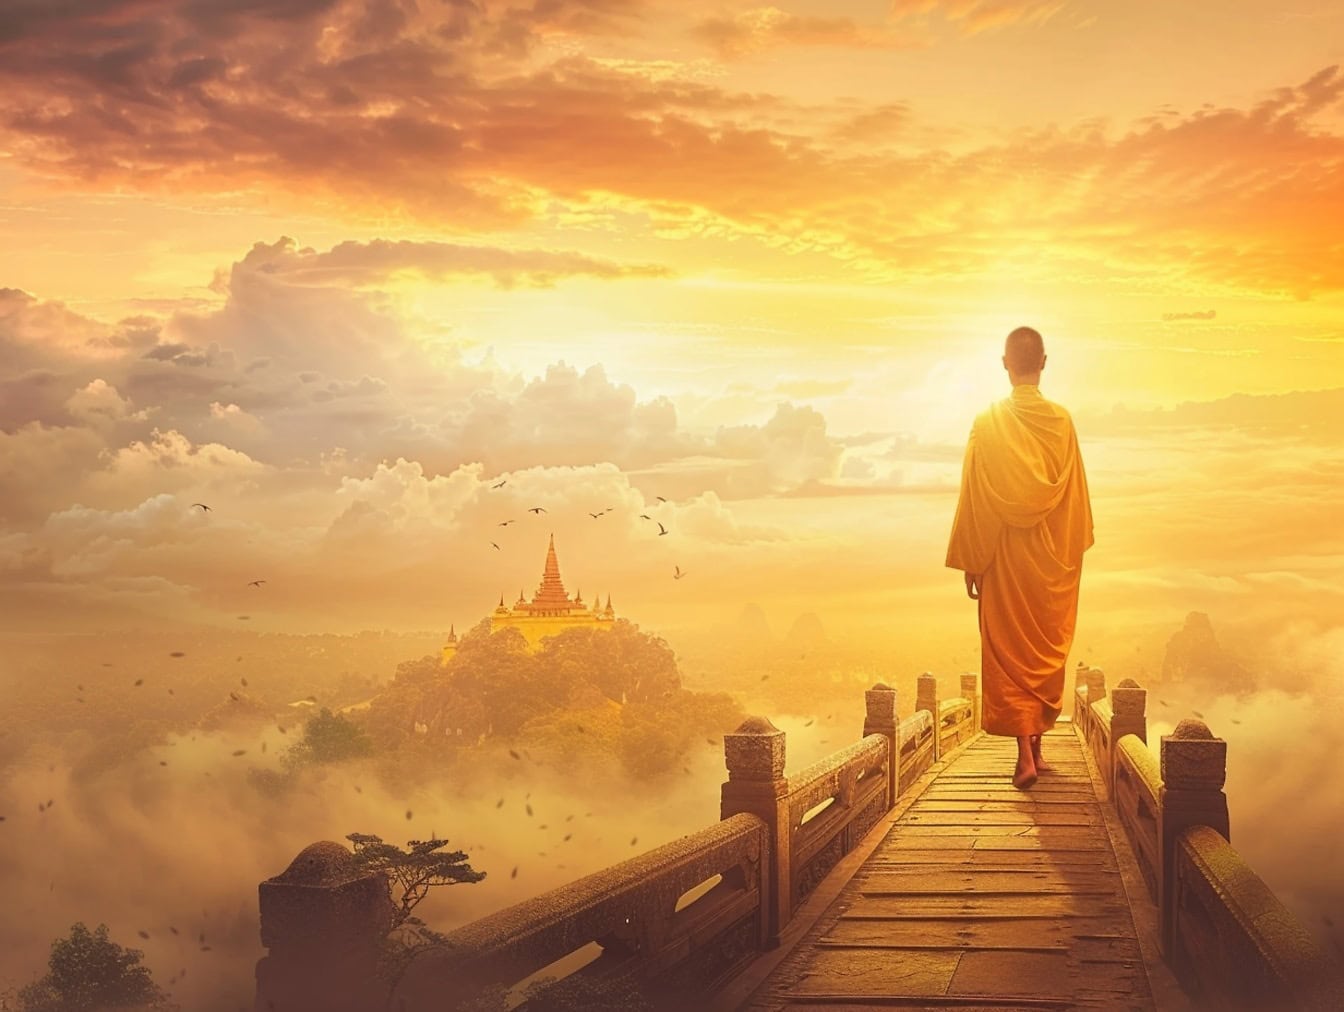 Budistički šaolinski redovnik hoda po pješačkom mostu u oblacima u suton, ilustracija mira i spokoja na putu prema nebu